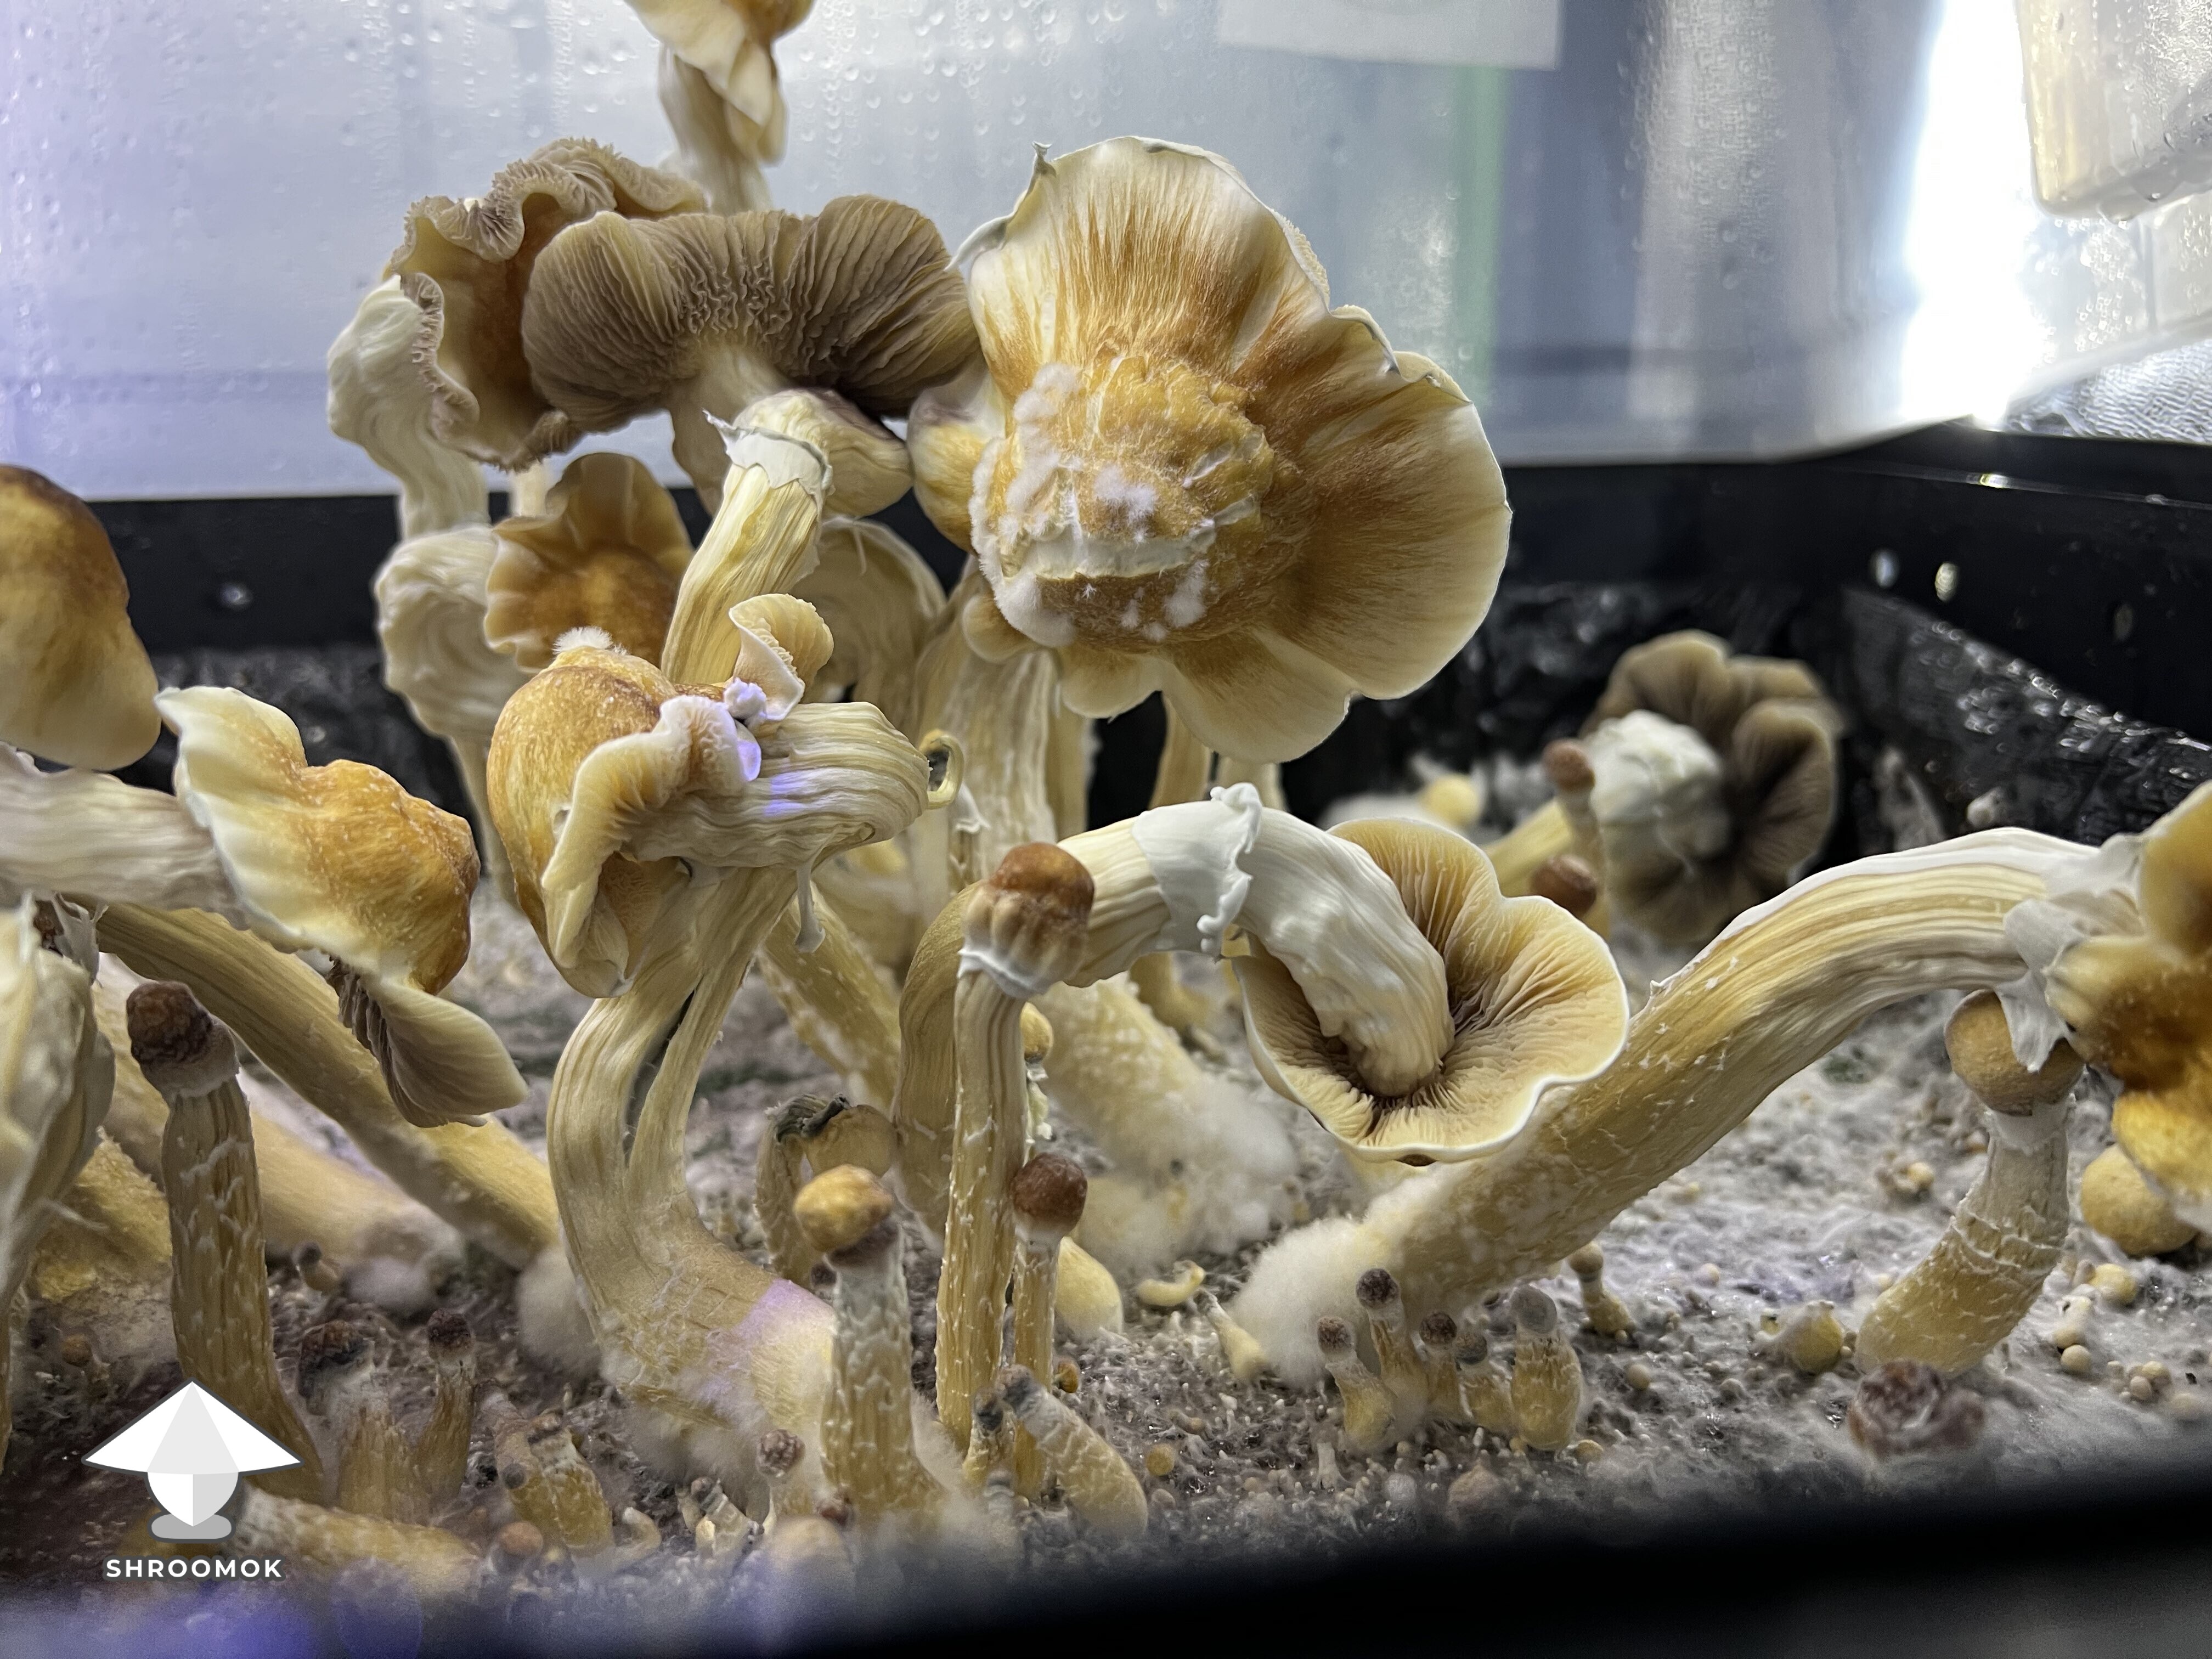 Ghidorah magic mushrooms growing #3